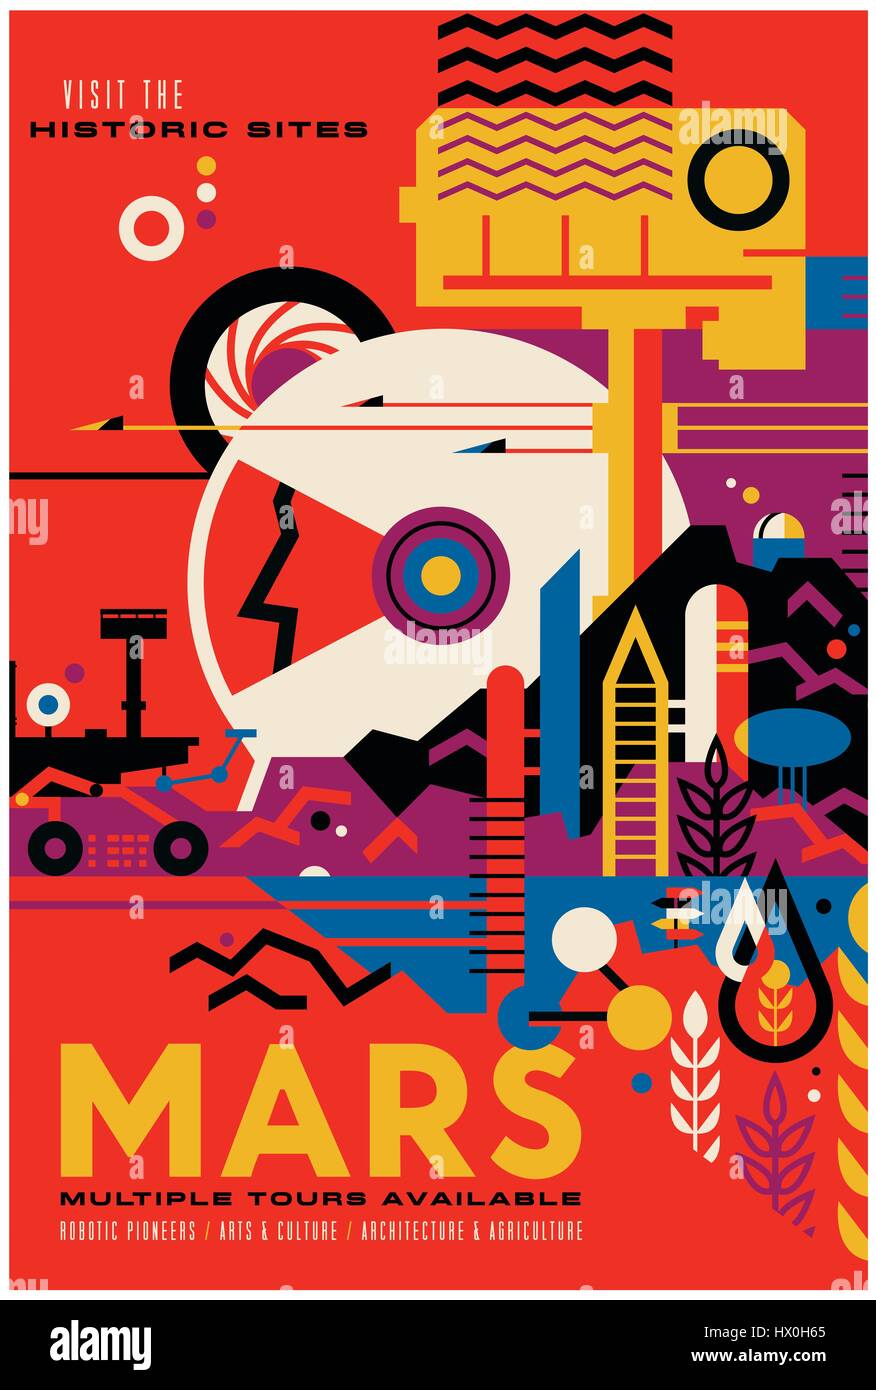 "Besuch der historischen Stätten - MARS mehrere Touren zur Verfügung" imaginäre Reisen Poster veröffentlicht durch das Studio am Jet Propulsion Laboratory der NASA im Jahr 2016 als Teil ihrer "Visionen der Zukunft"-Serie. Das Mars-Exploration-Programm vorstellen, ein anderes Mal als Weltraumtouristen auf die Meilensteine der heutigen Auseinandersetzung als historische Ereignisse zurückblicken. Stockfoto